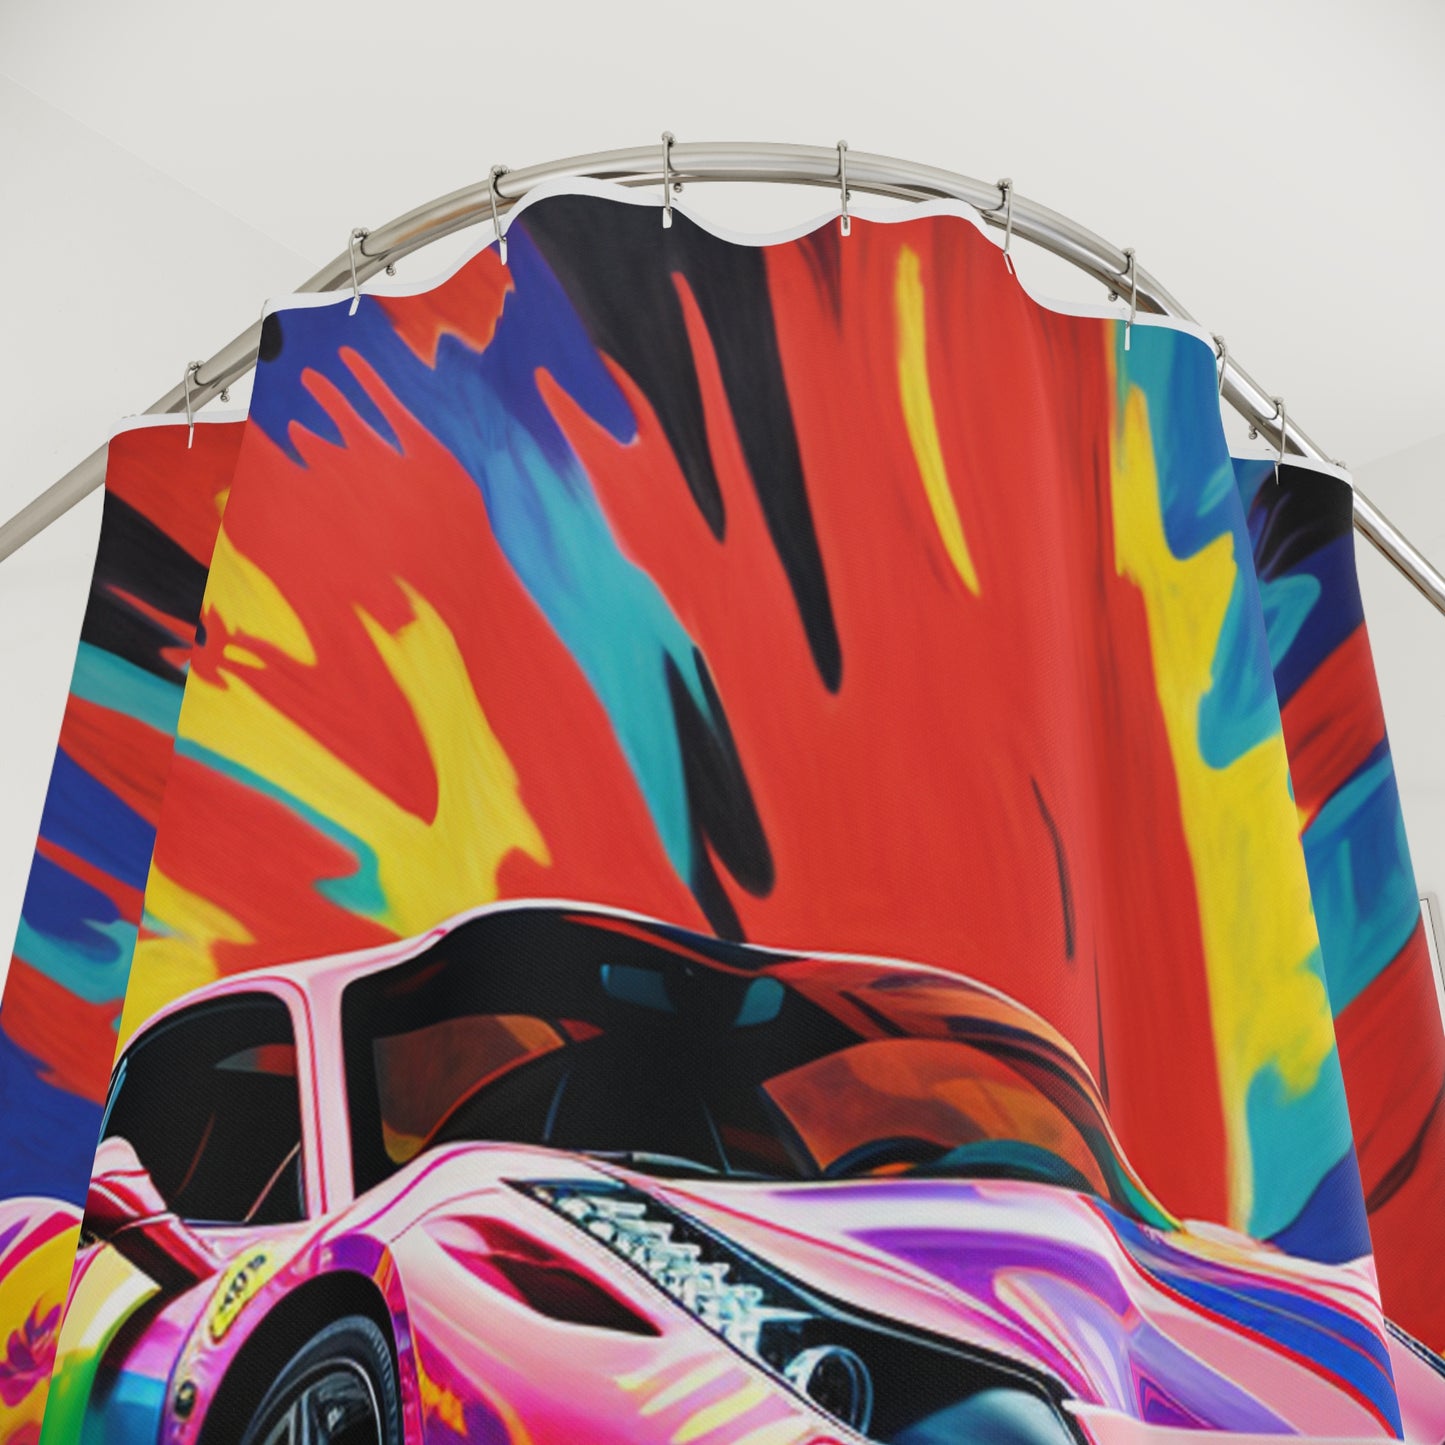 Polyester Shower Curtain Hyper Colorfull Ferrari 3